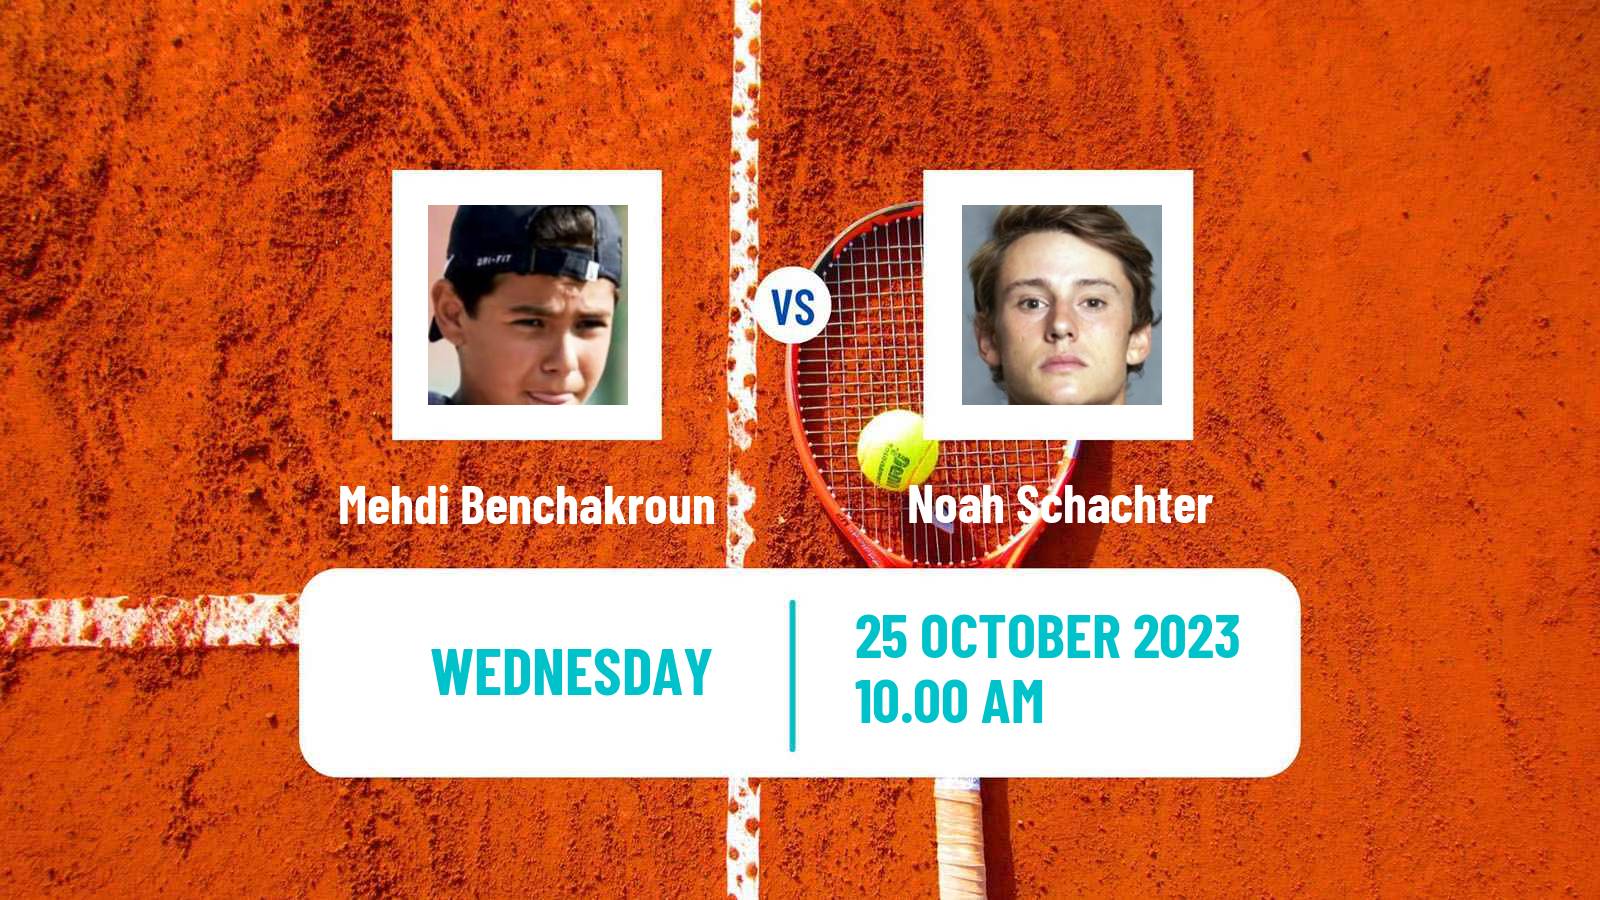 Tennis ITF M15 Tallahassee Fl Men Mehdi Benchakroun - Noah Schachter